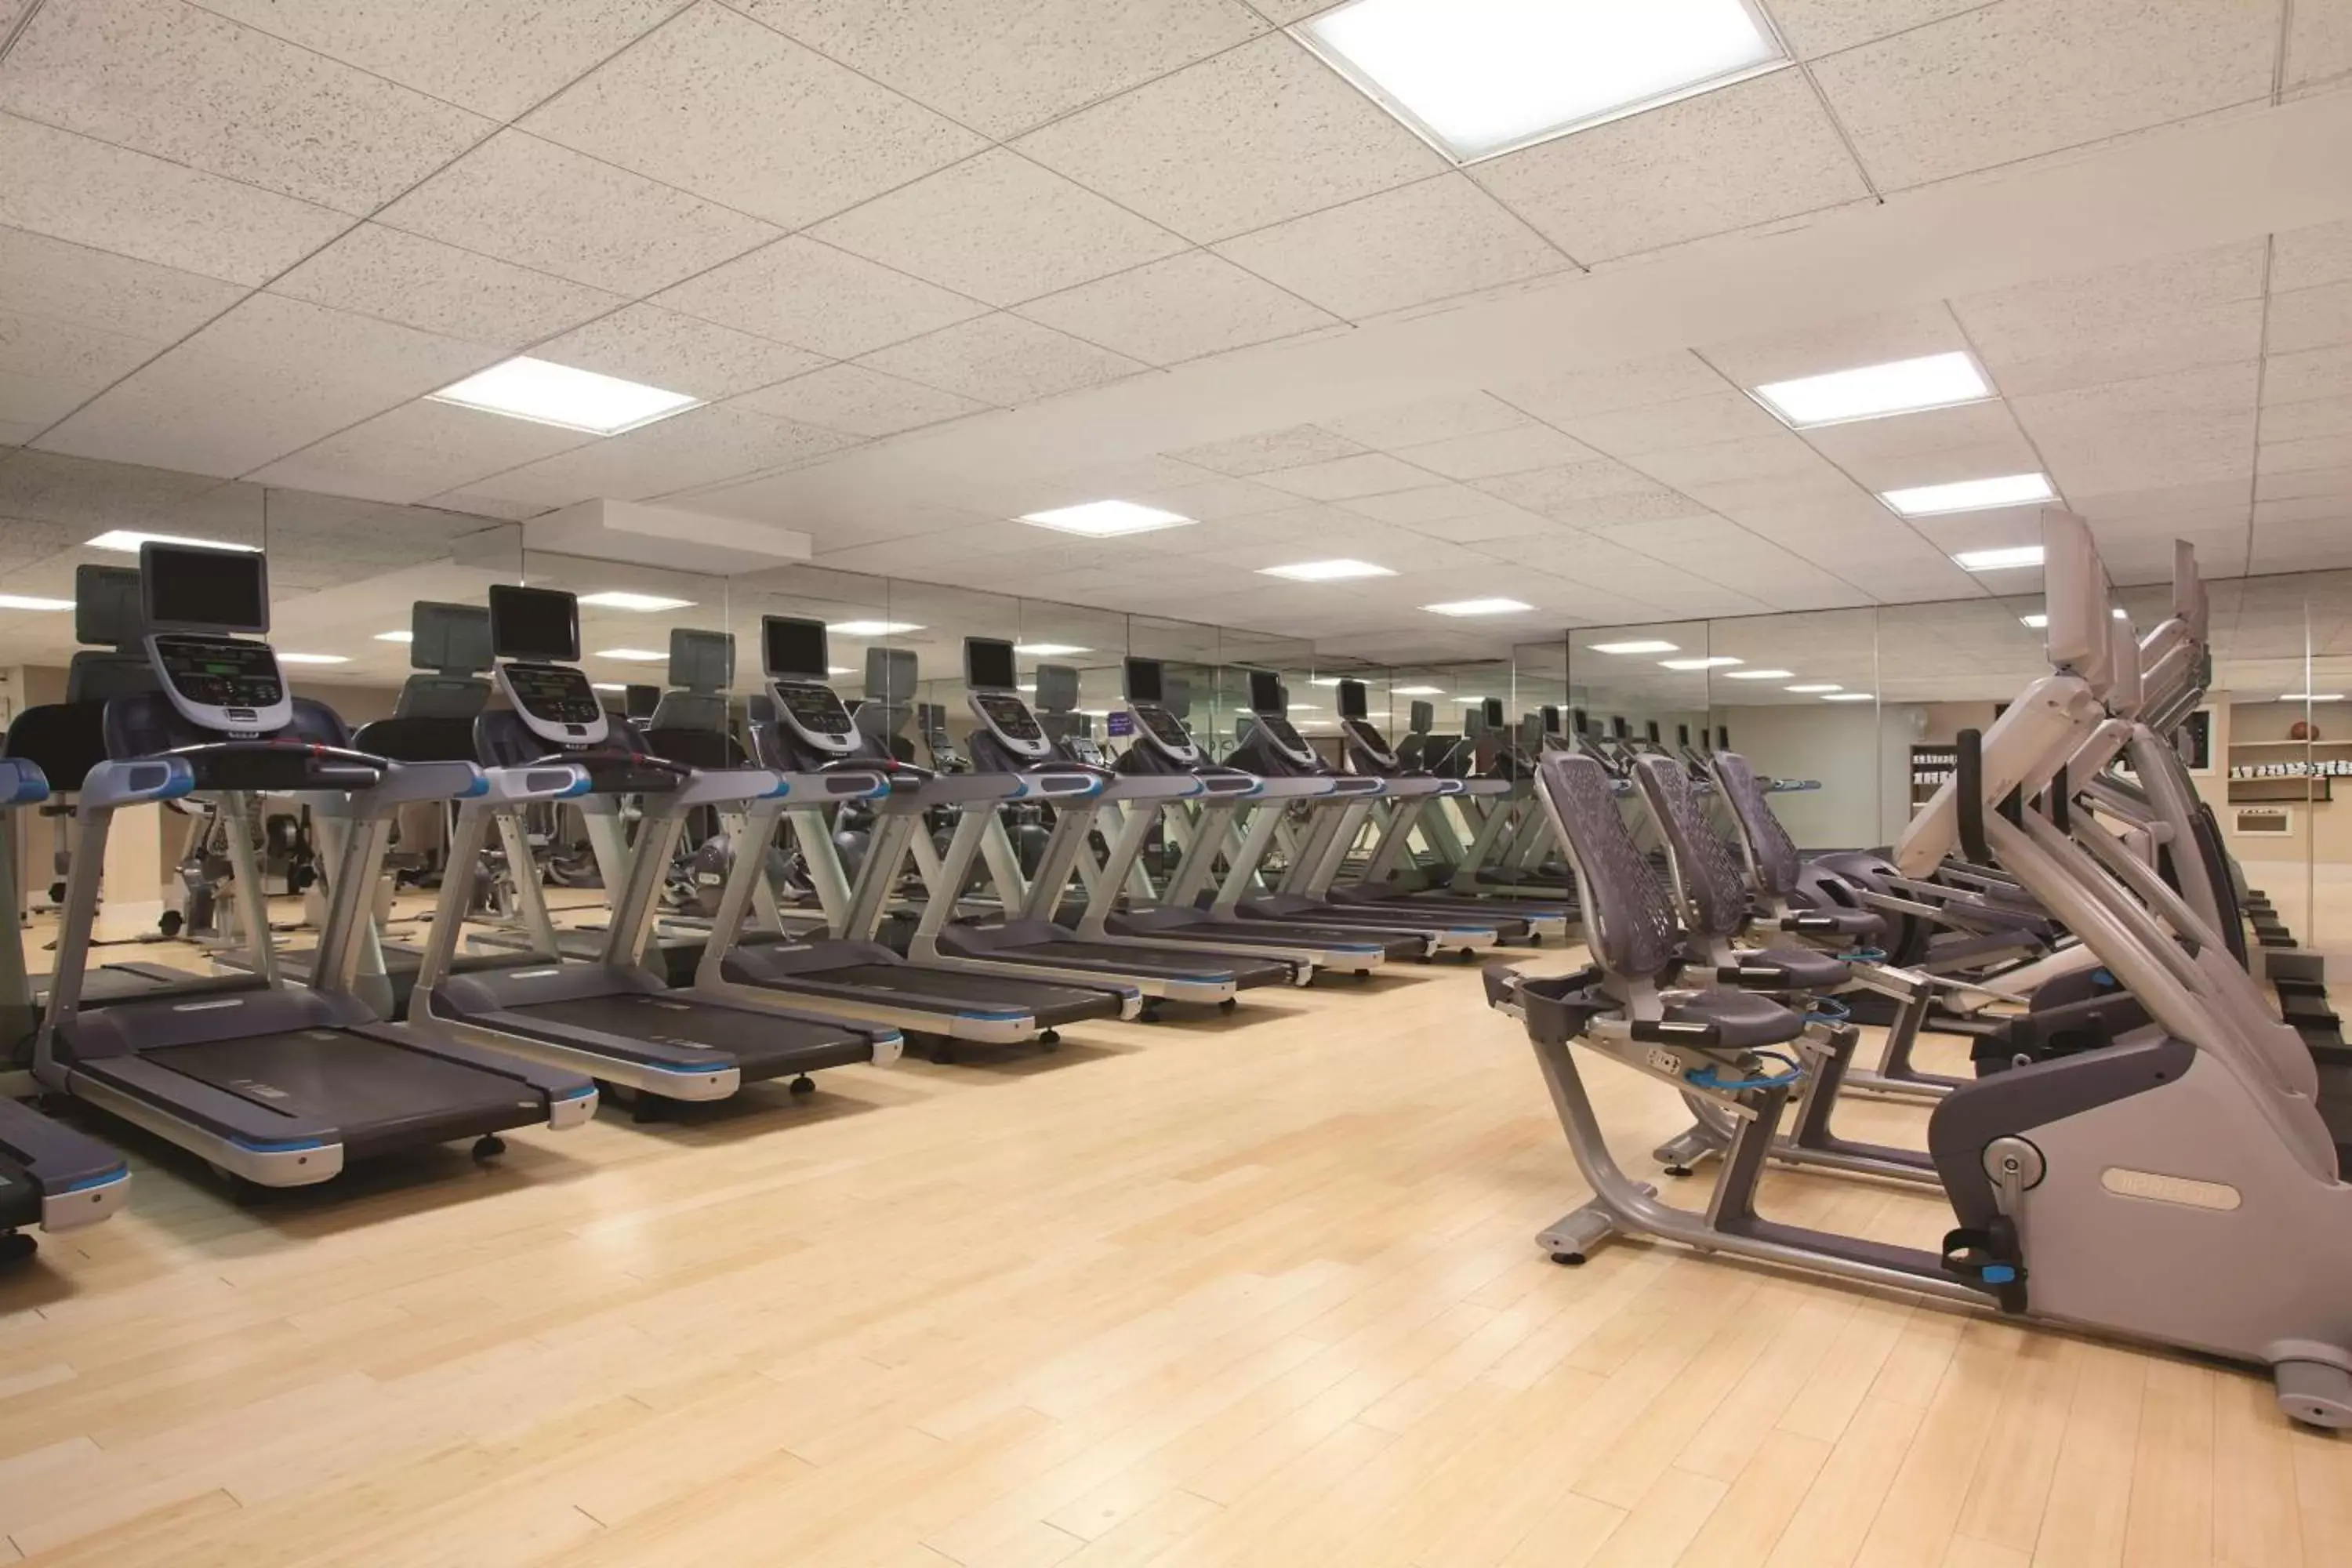 Fitness centre/facilities, Fitness Center/Facilities in Hilton Boston Dedham